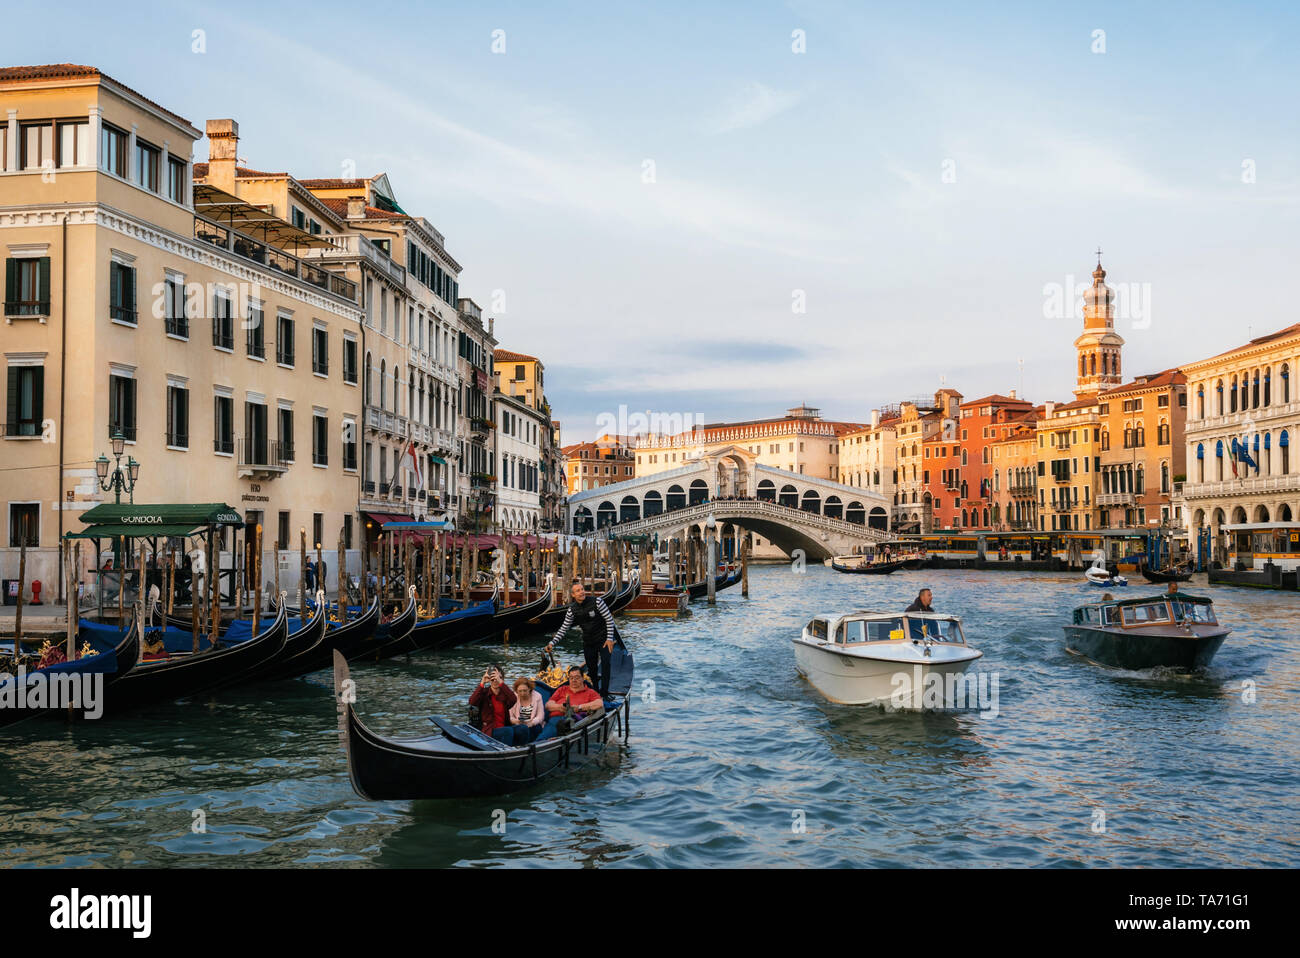 Venecia, Italia - 10 de mayo de 2019: El Puente de Rialto en el Gran Canal con góndolas y lanchas taxi al atardecer, Venecia, Italia Foto de stock